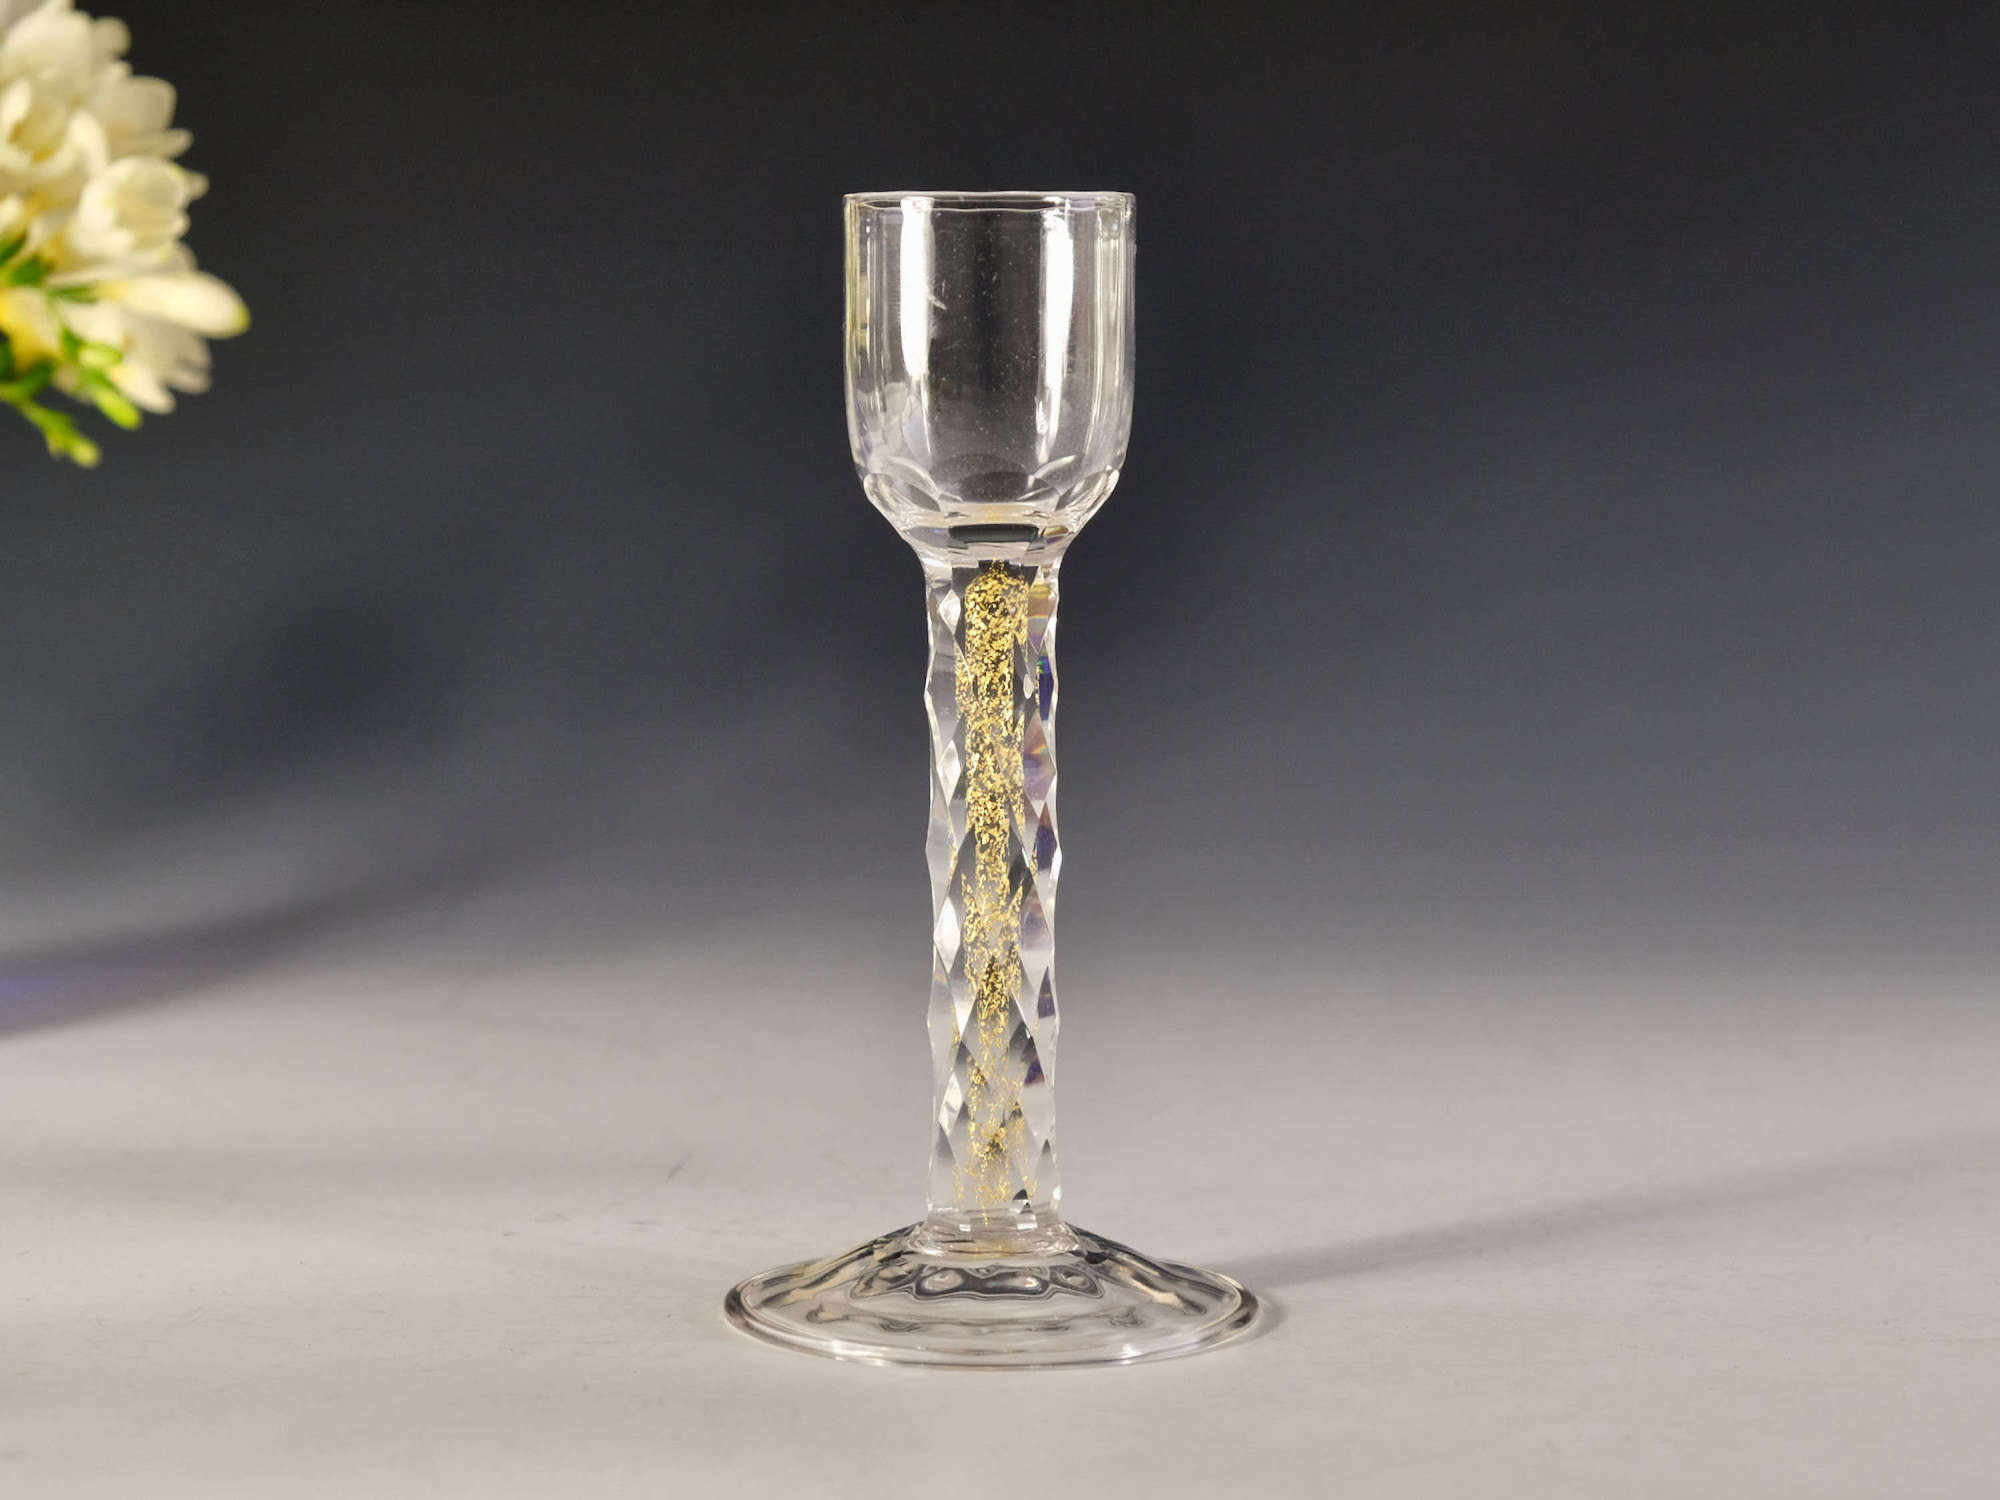 Liqueur glass the facet cut stem with gold foil inclusions C1900